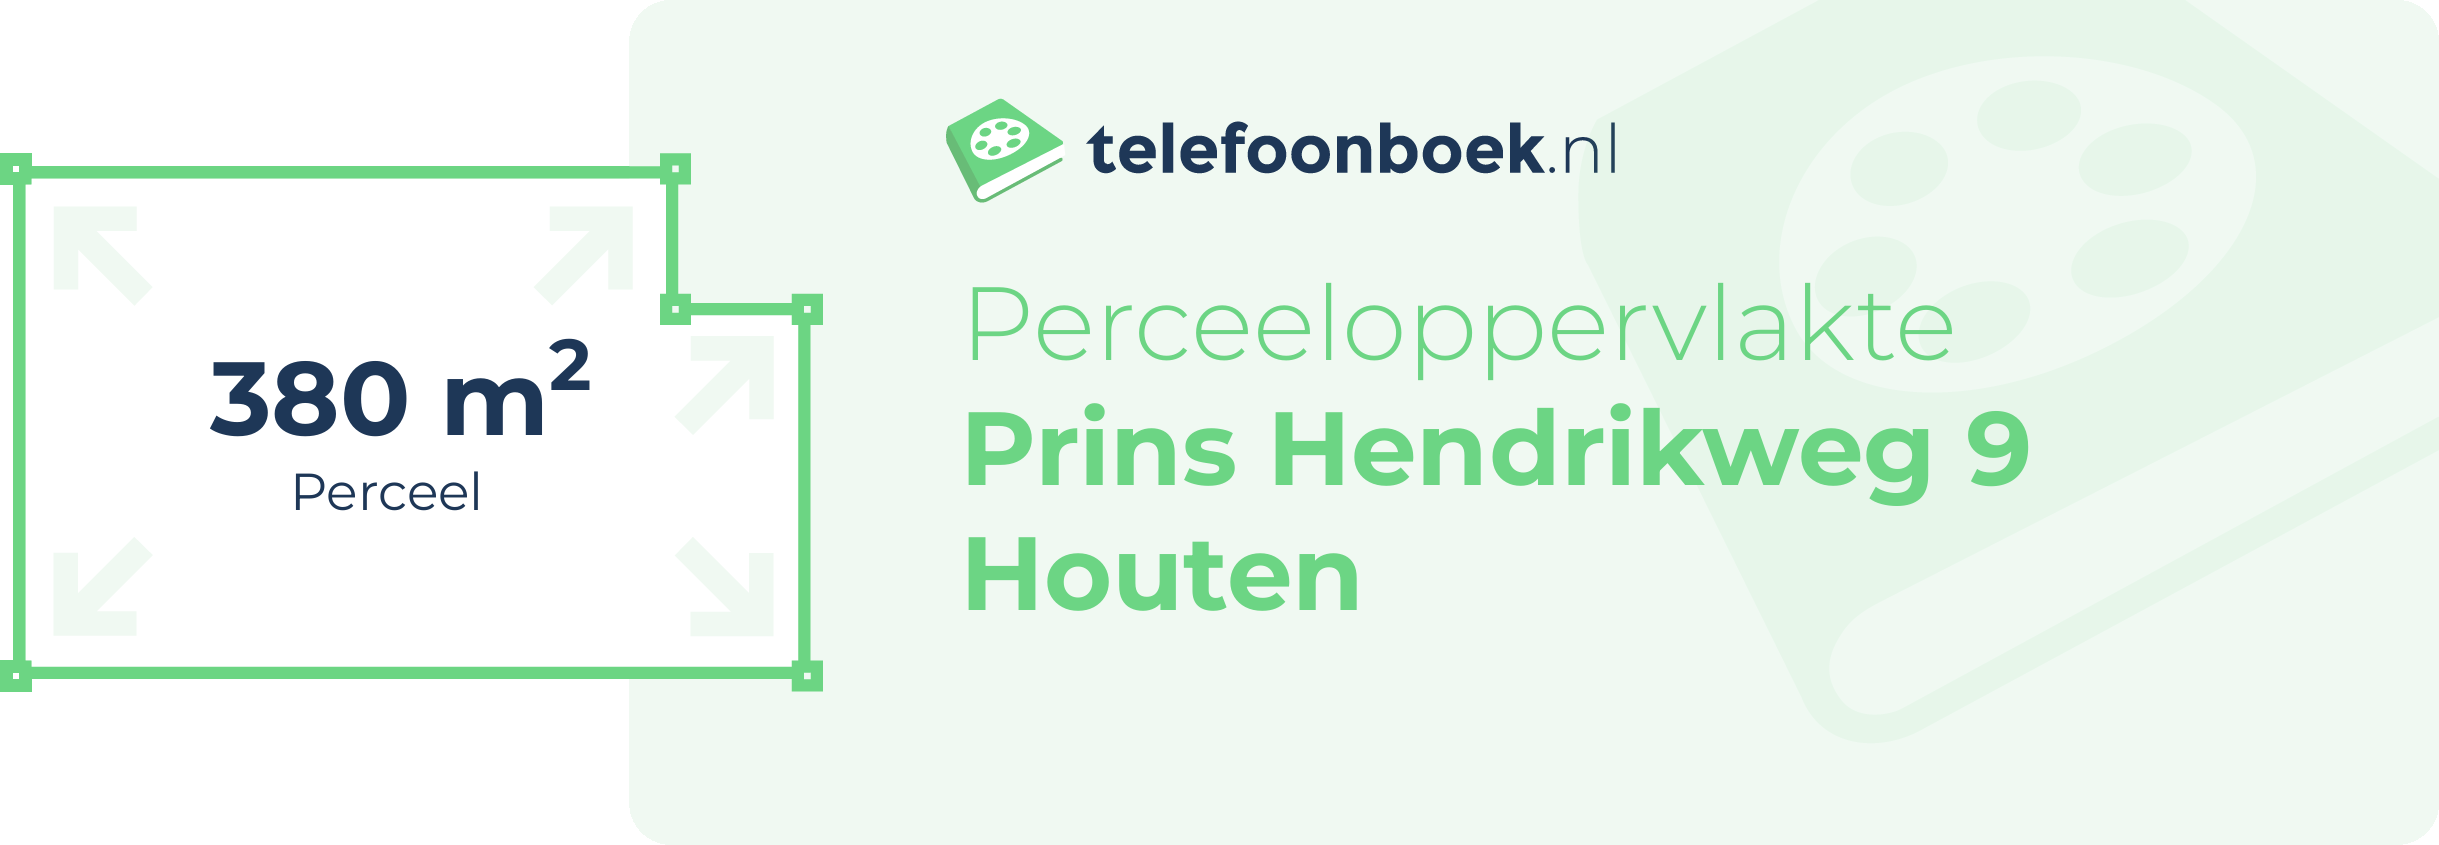 Perceeloppervlakte Prins Hendrikweg 9 Houten